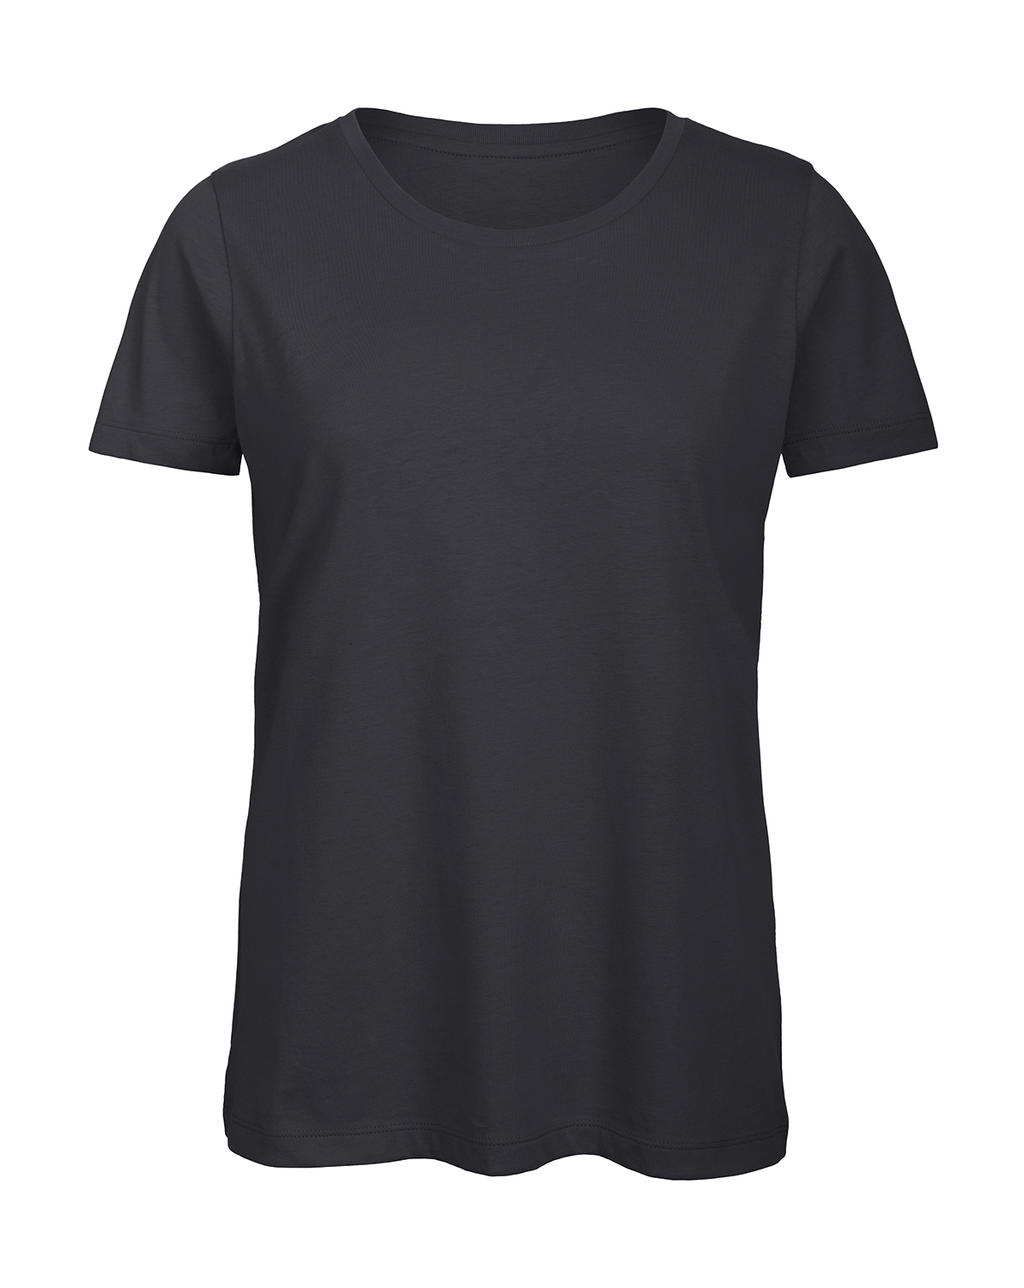 Tričko dámské B&C Jersey - tmavě šedé, XL